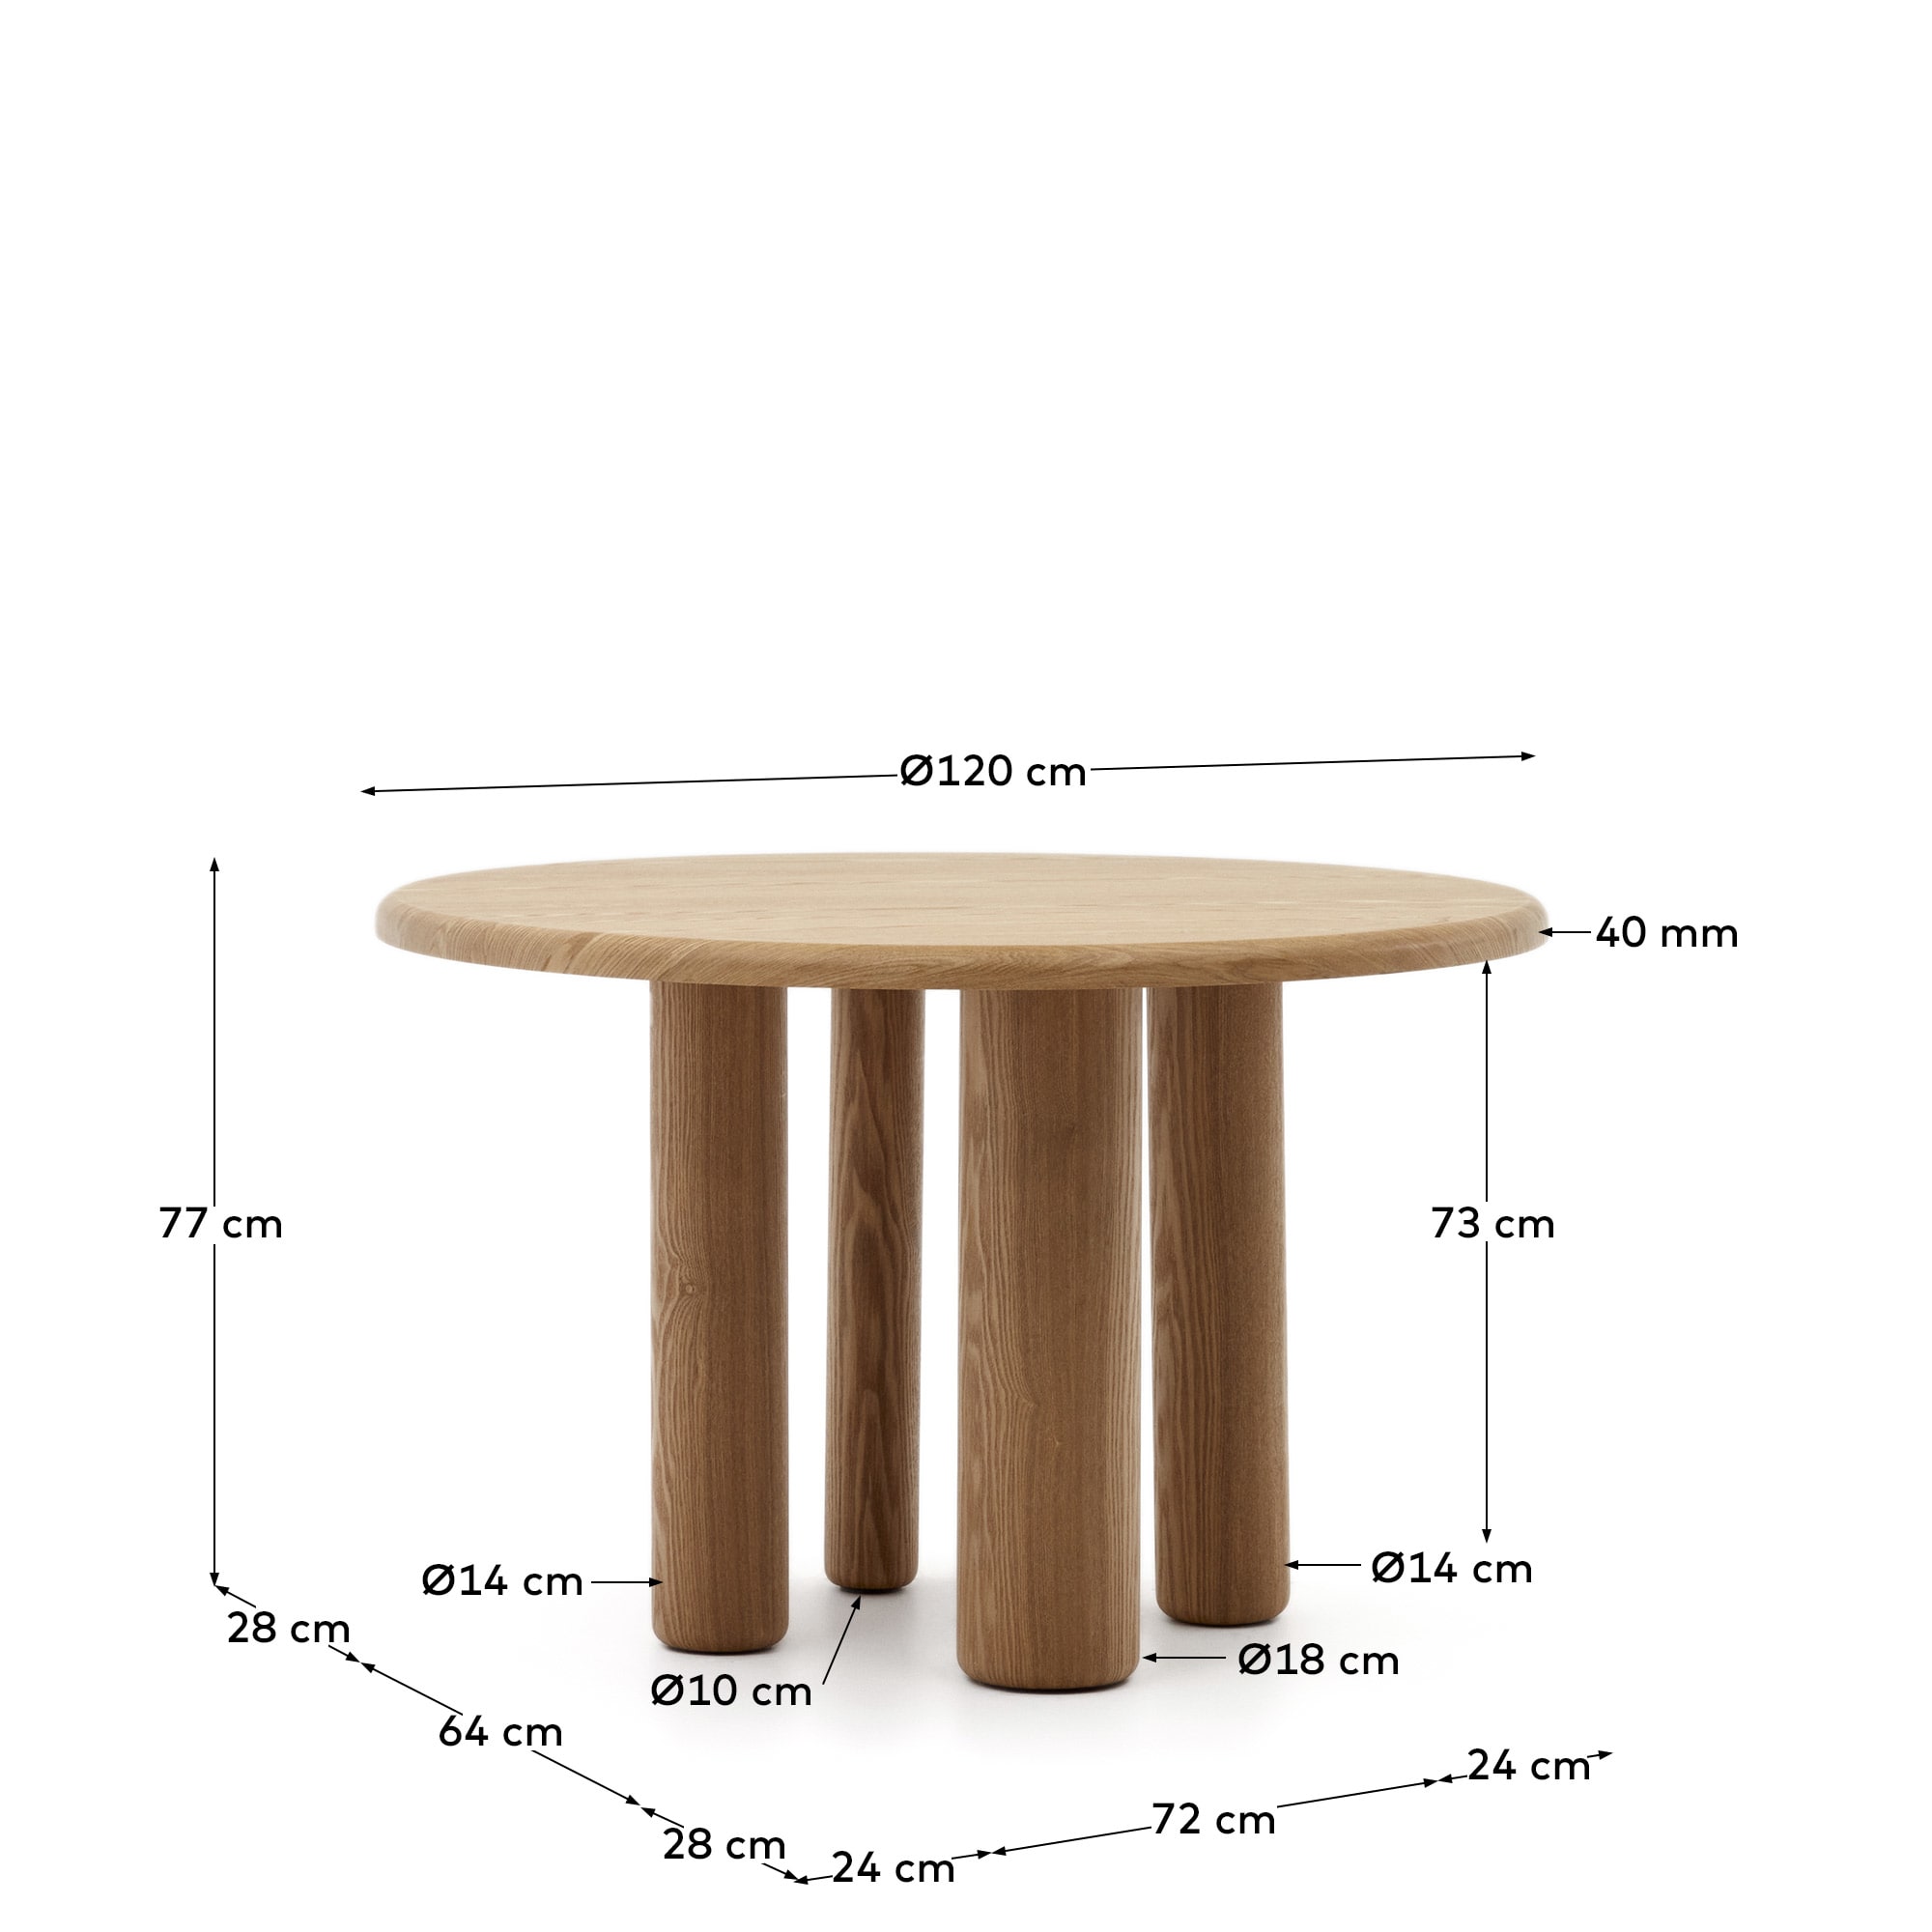 마일렌 정원형 애쉬나무 네츄럴 무늬목 테이블, Ø 120 cm - 크기